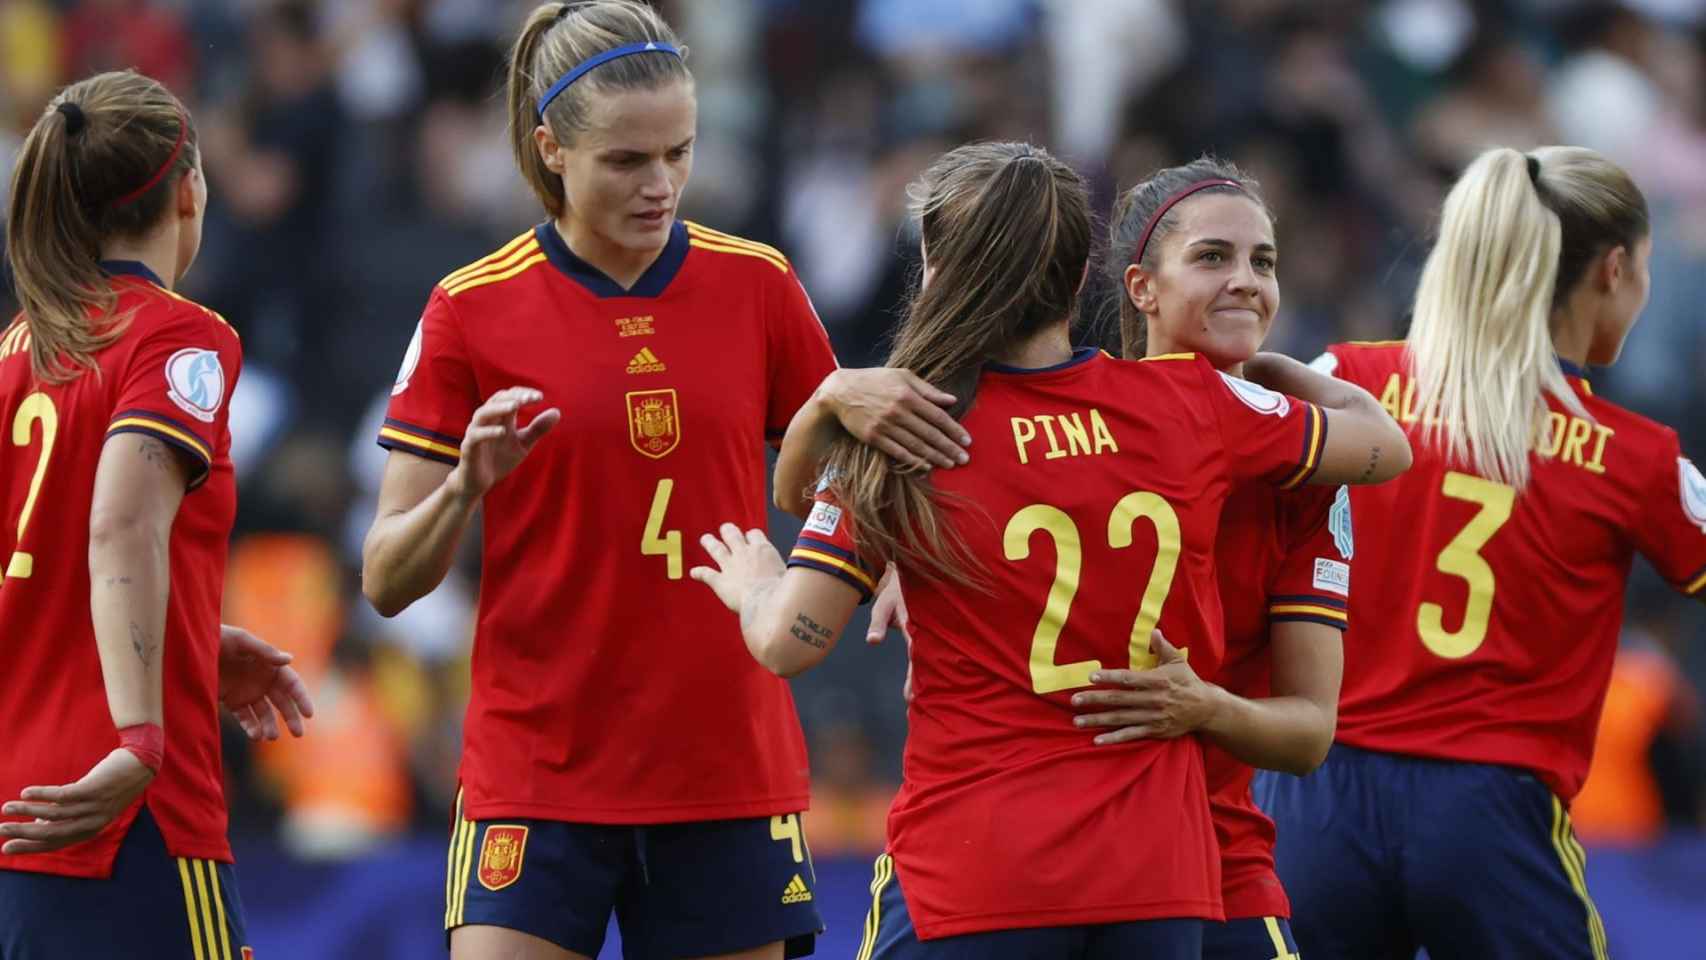 Irene Paredes, Claudia Pina y Marta Cardona celebran una victoria de la selección española de fútbol femenino en la Eurocopa 2022